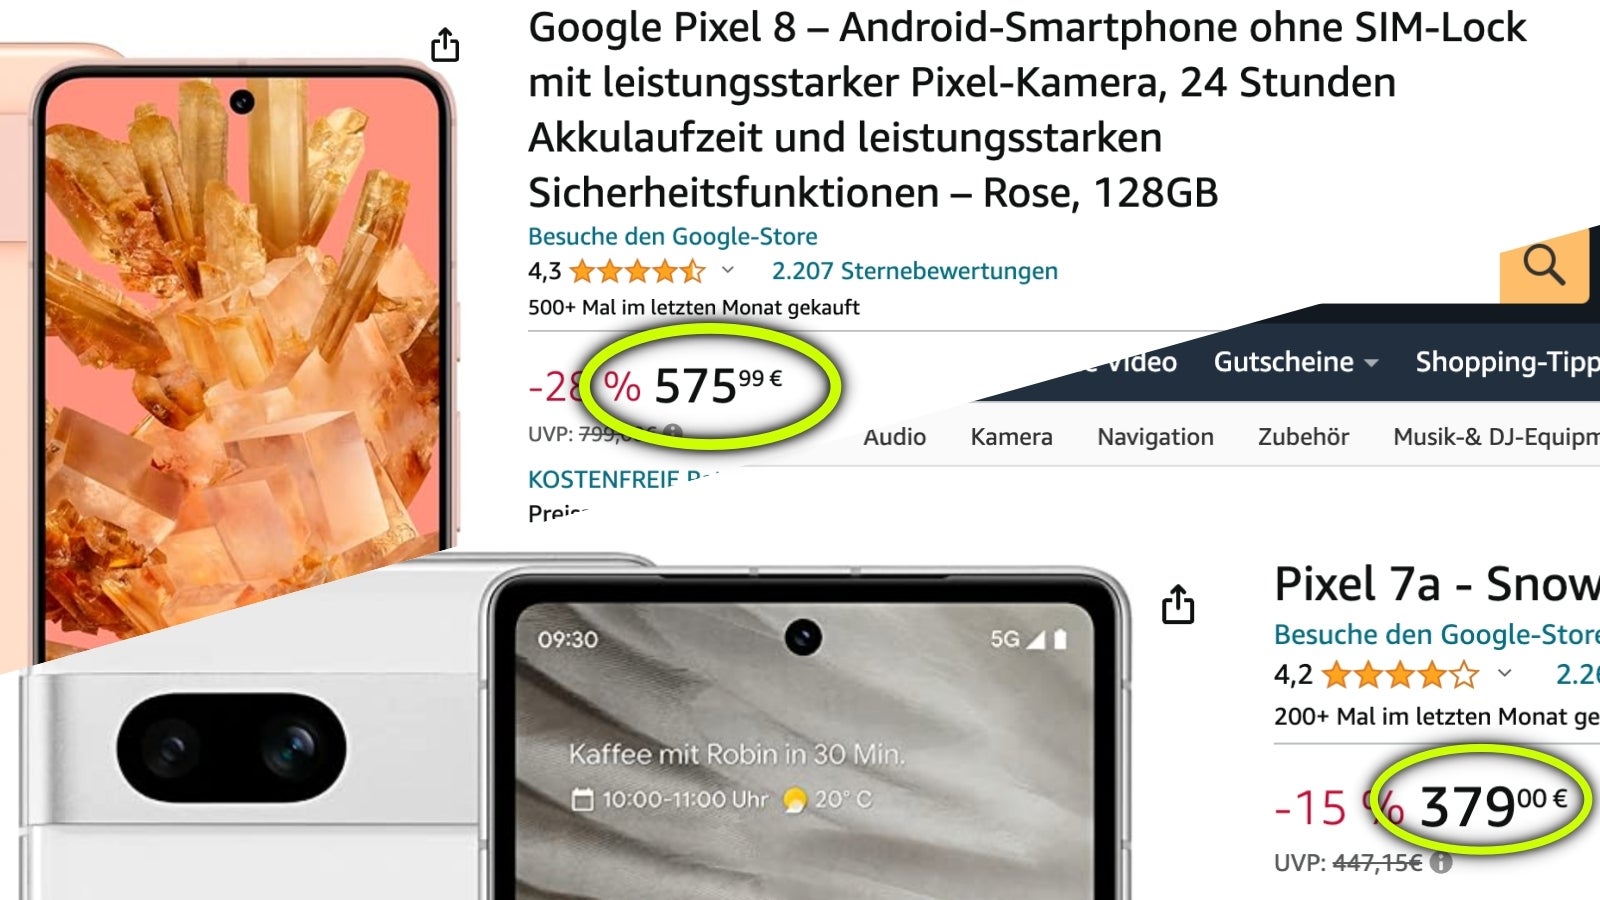 In Europa scheint das 700 Euro teure Motorola Edge 50 Pro neben dem Pixel 8 teuer zu sein, während das Pixel 7a fast halb so teuer ist (im Angebot).  - Das Supertelefon von Motorola kostet in Indien 350 Euro und in der EU 700 Euro: Einfache Wirtschaftlichkeit oder Besteuerung der Reichen?